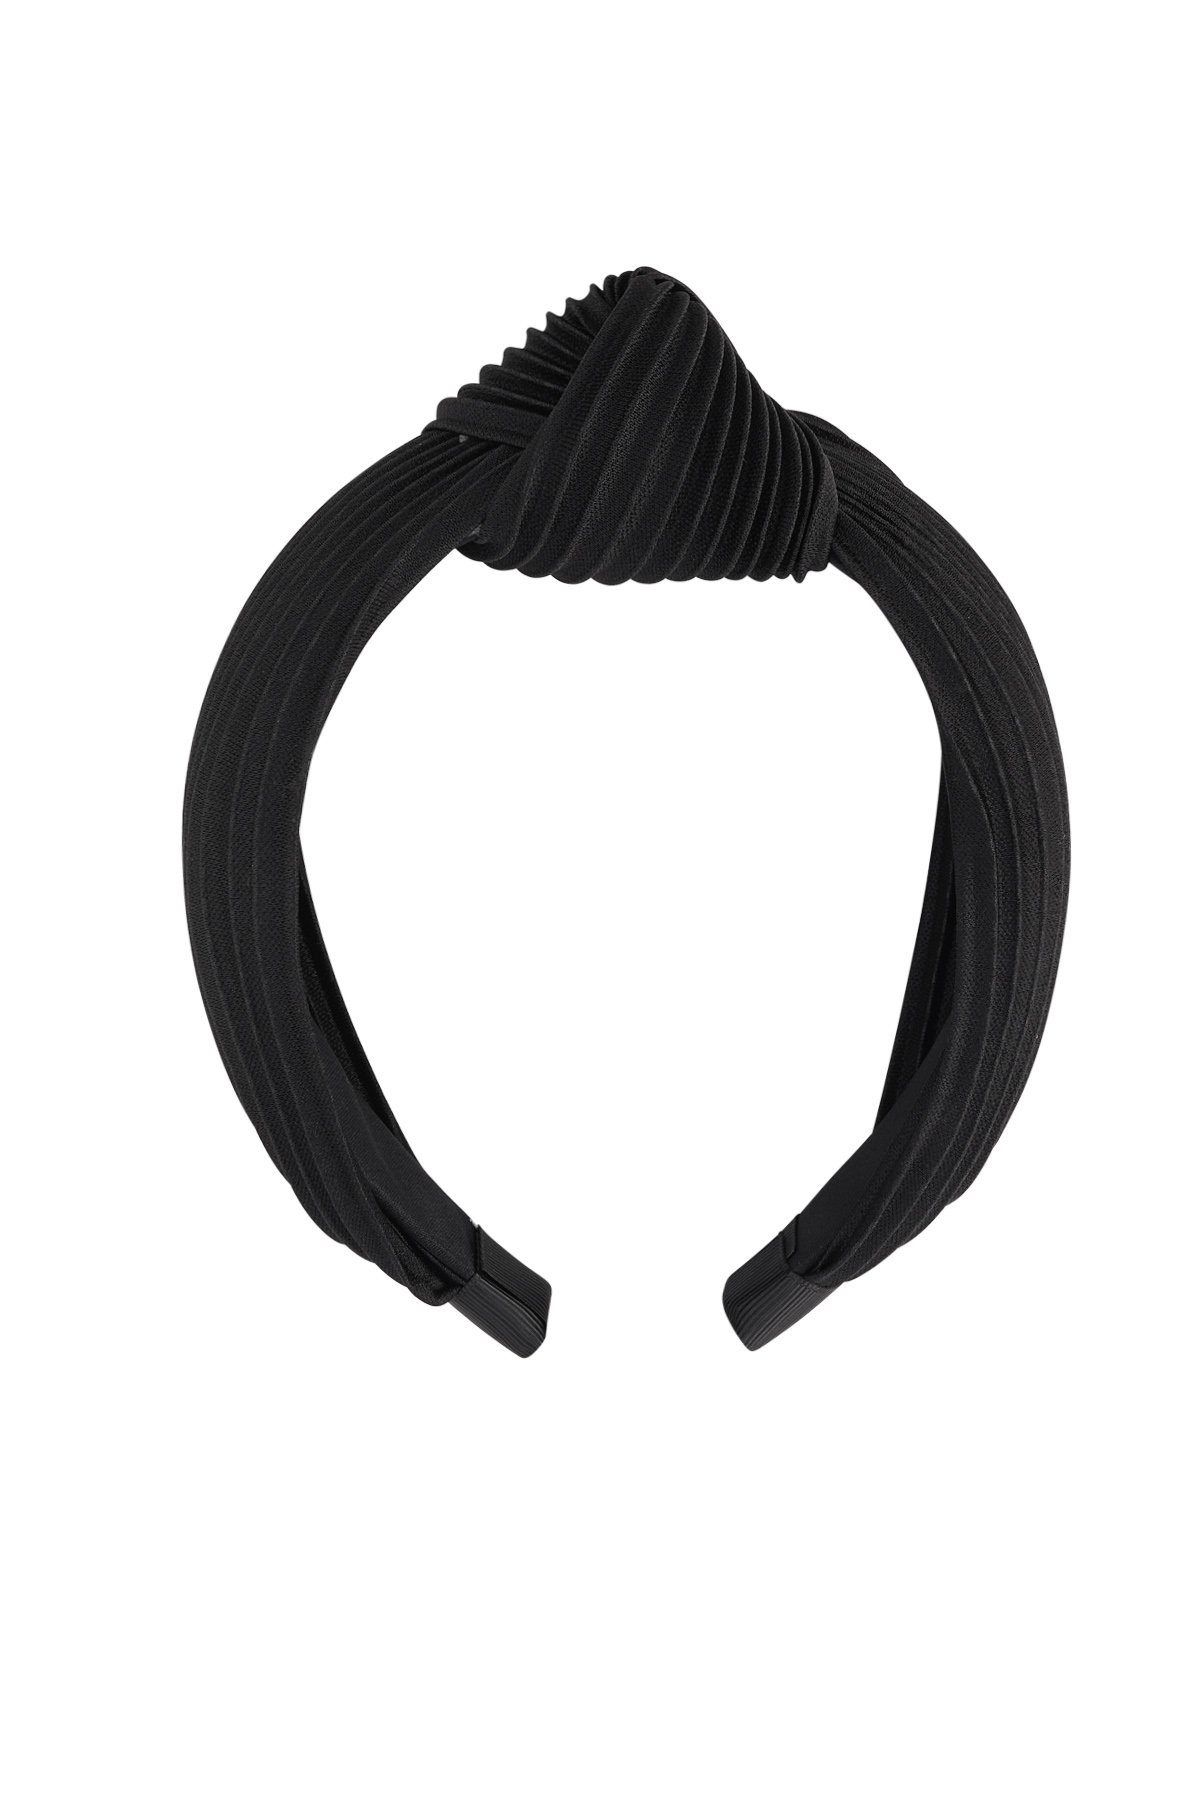 Haarband rib met knoop - zwart Plastic h5 